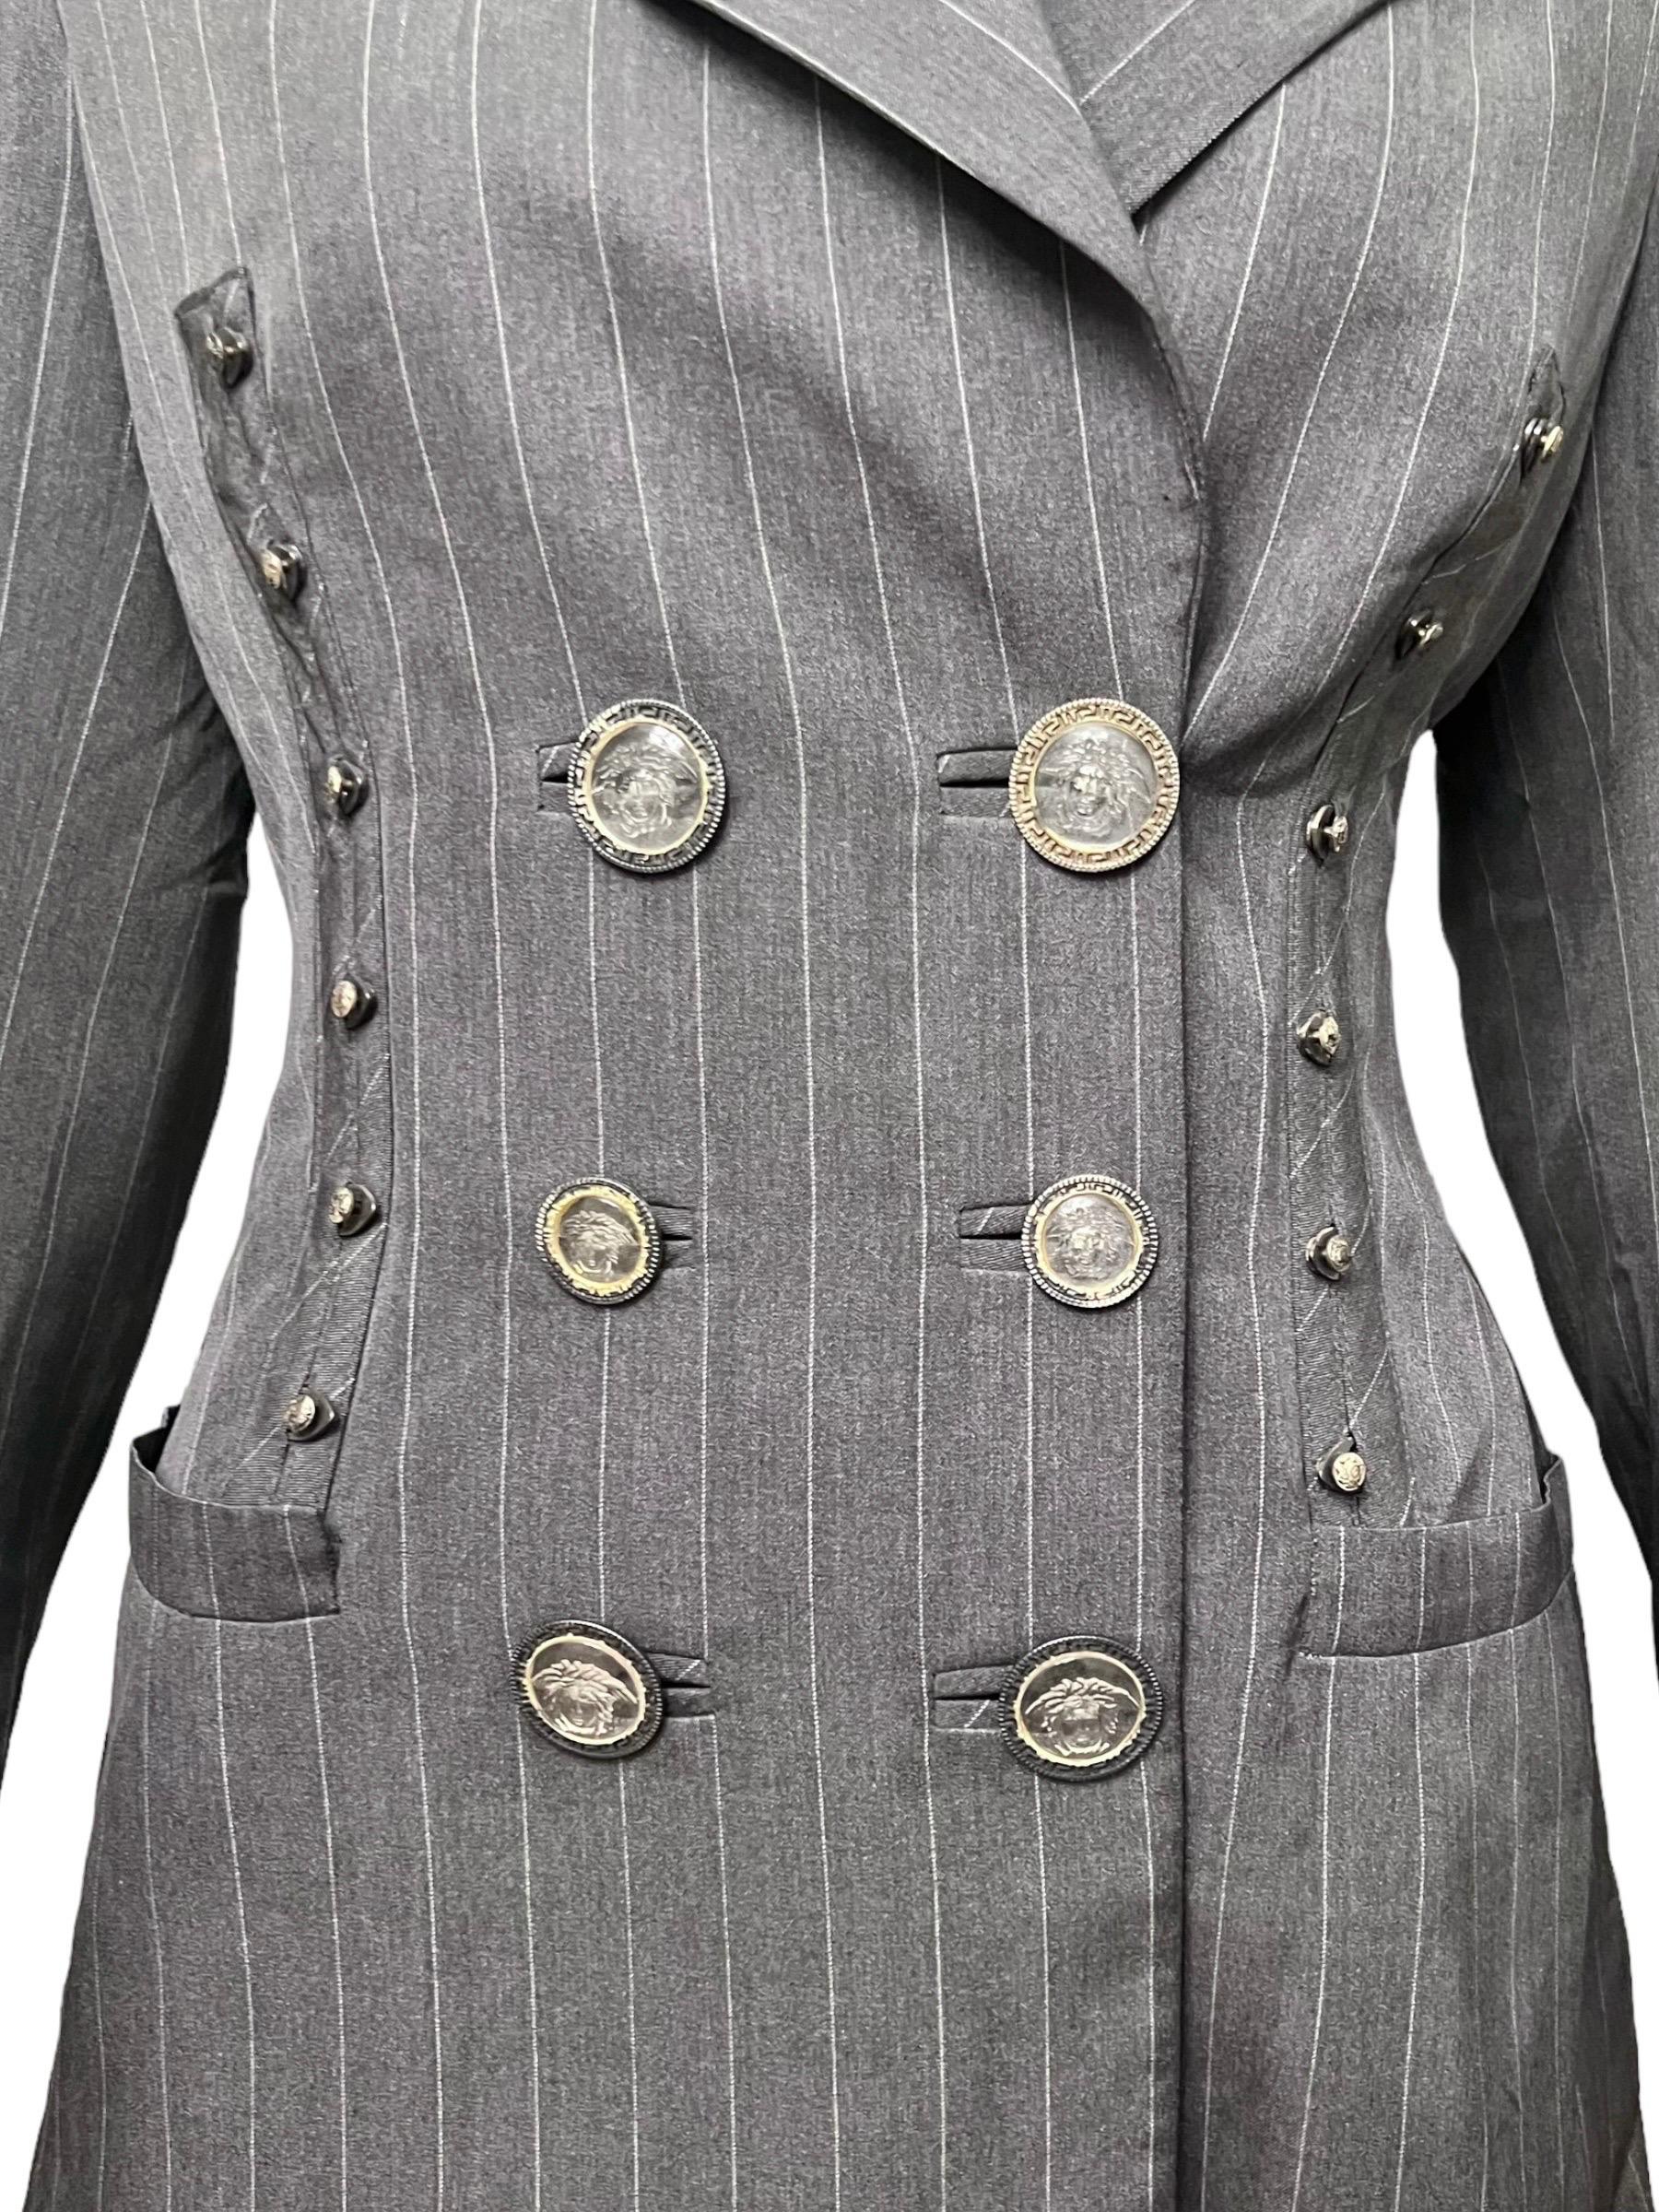 S/S 1995 Gianni Versace Runway Gray Pinstripe Medusa Medallion Skirt Suit For Sale 4